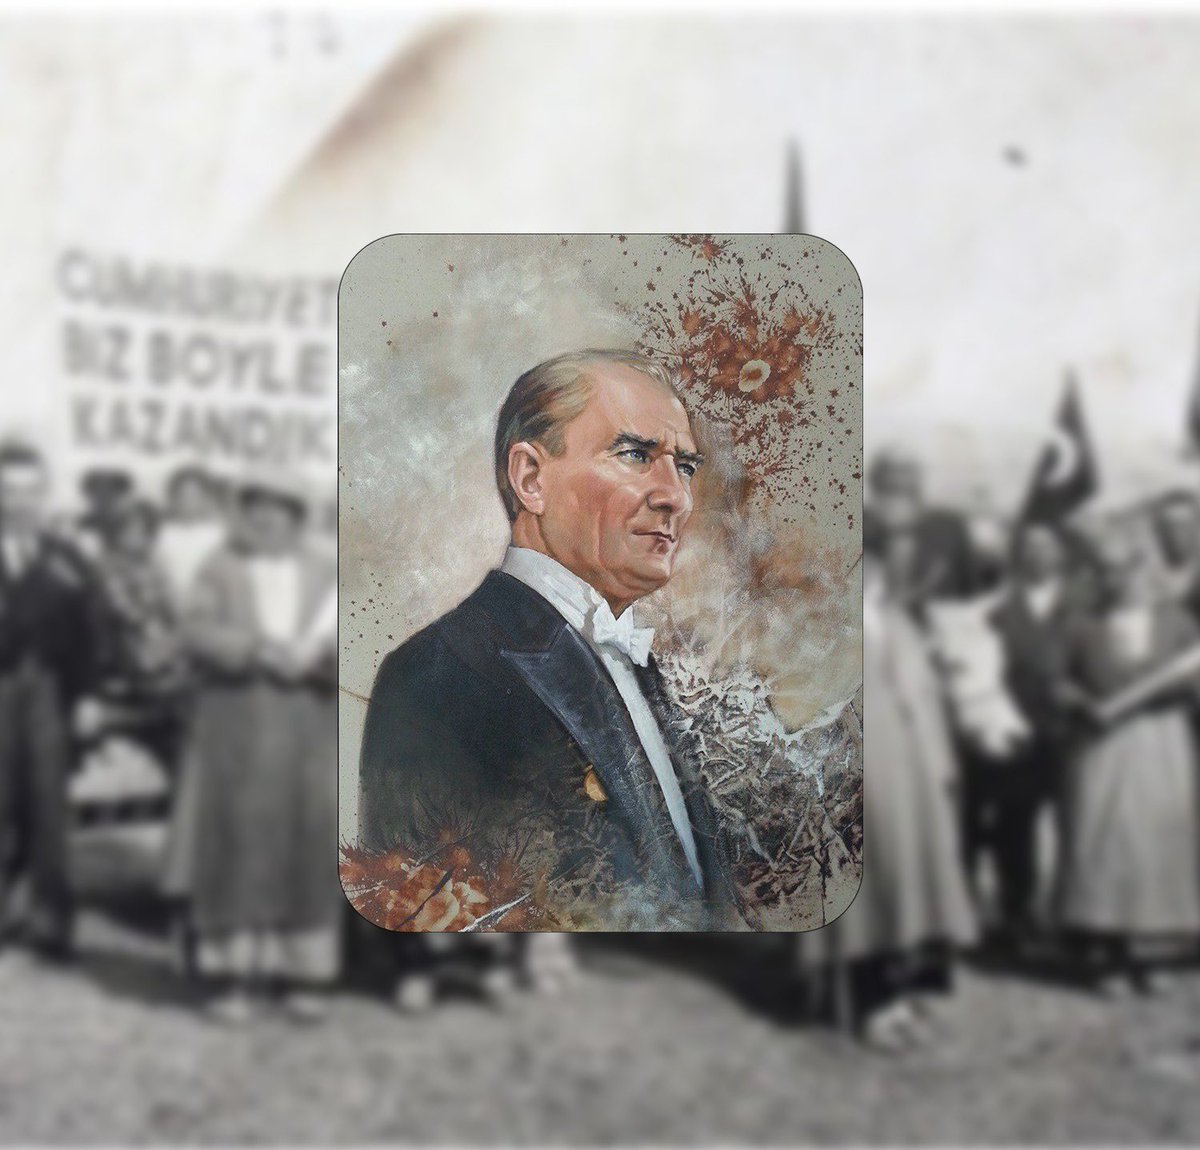 100 yıl önce ulu önder Mustafa Kemal Paşa'mız, silah arkadaşları ve aziz milletimiz büyük bir mücadele verdiler. Bugün Büyük Önder Mustafa Kemal Atatürk’ün “En büyük eserim” dediği, aydınlanmanın ve çağdaşlaşmanın simgesi olan Türkiye Cumhuriyeti’nin 100. yaşını kutluyor ve bize…